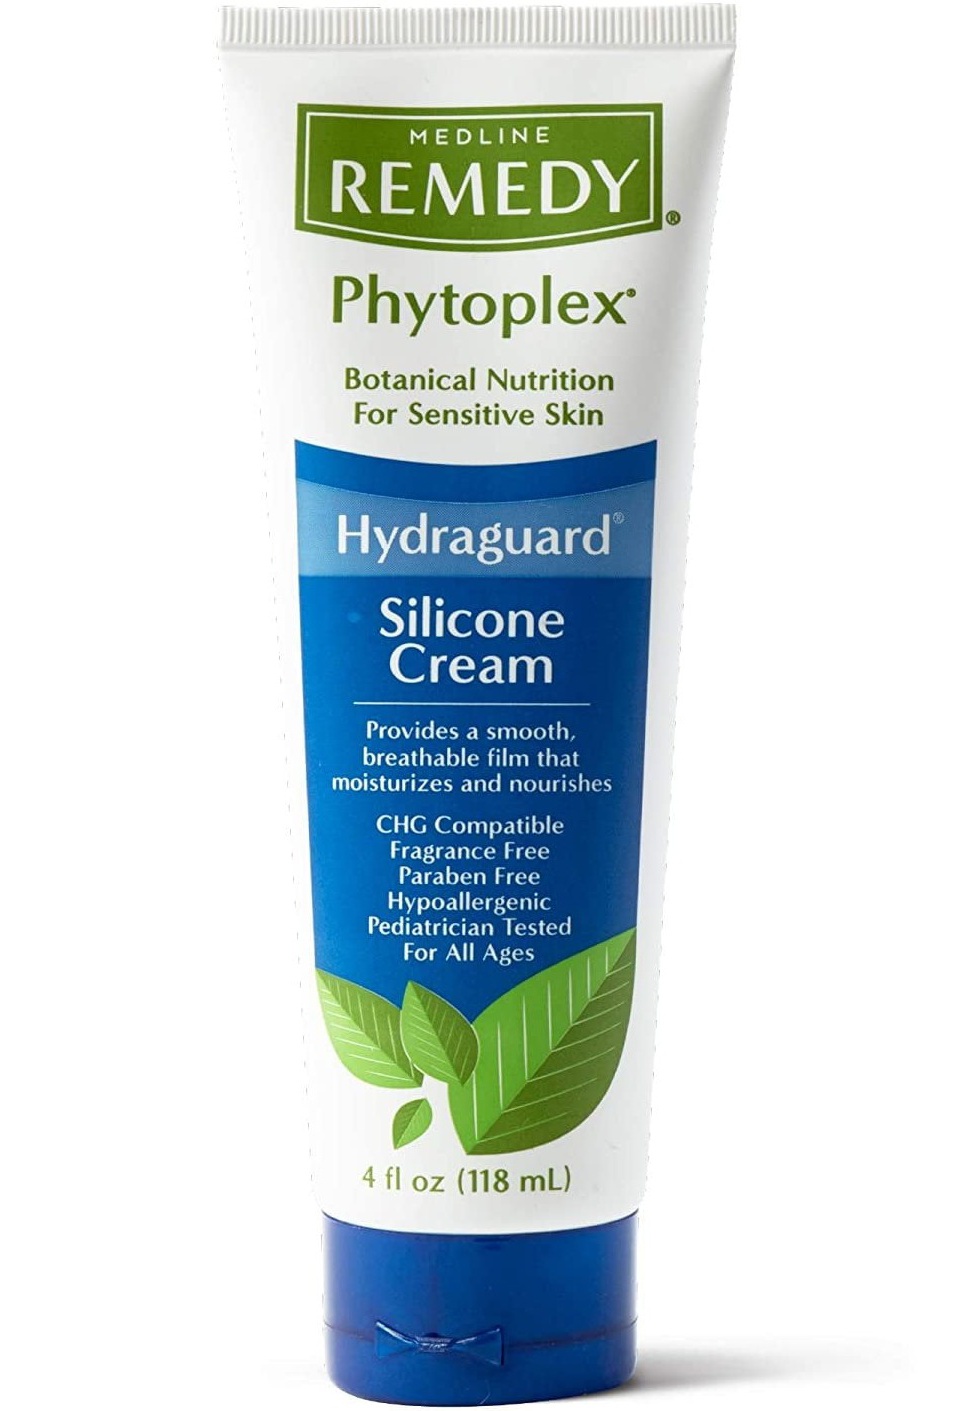 Medline Remedy Remedy Phytoplex Hydraguard Silicone Cream